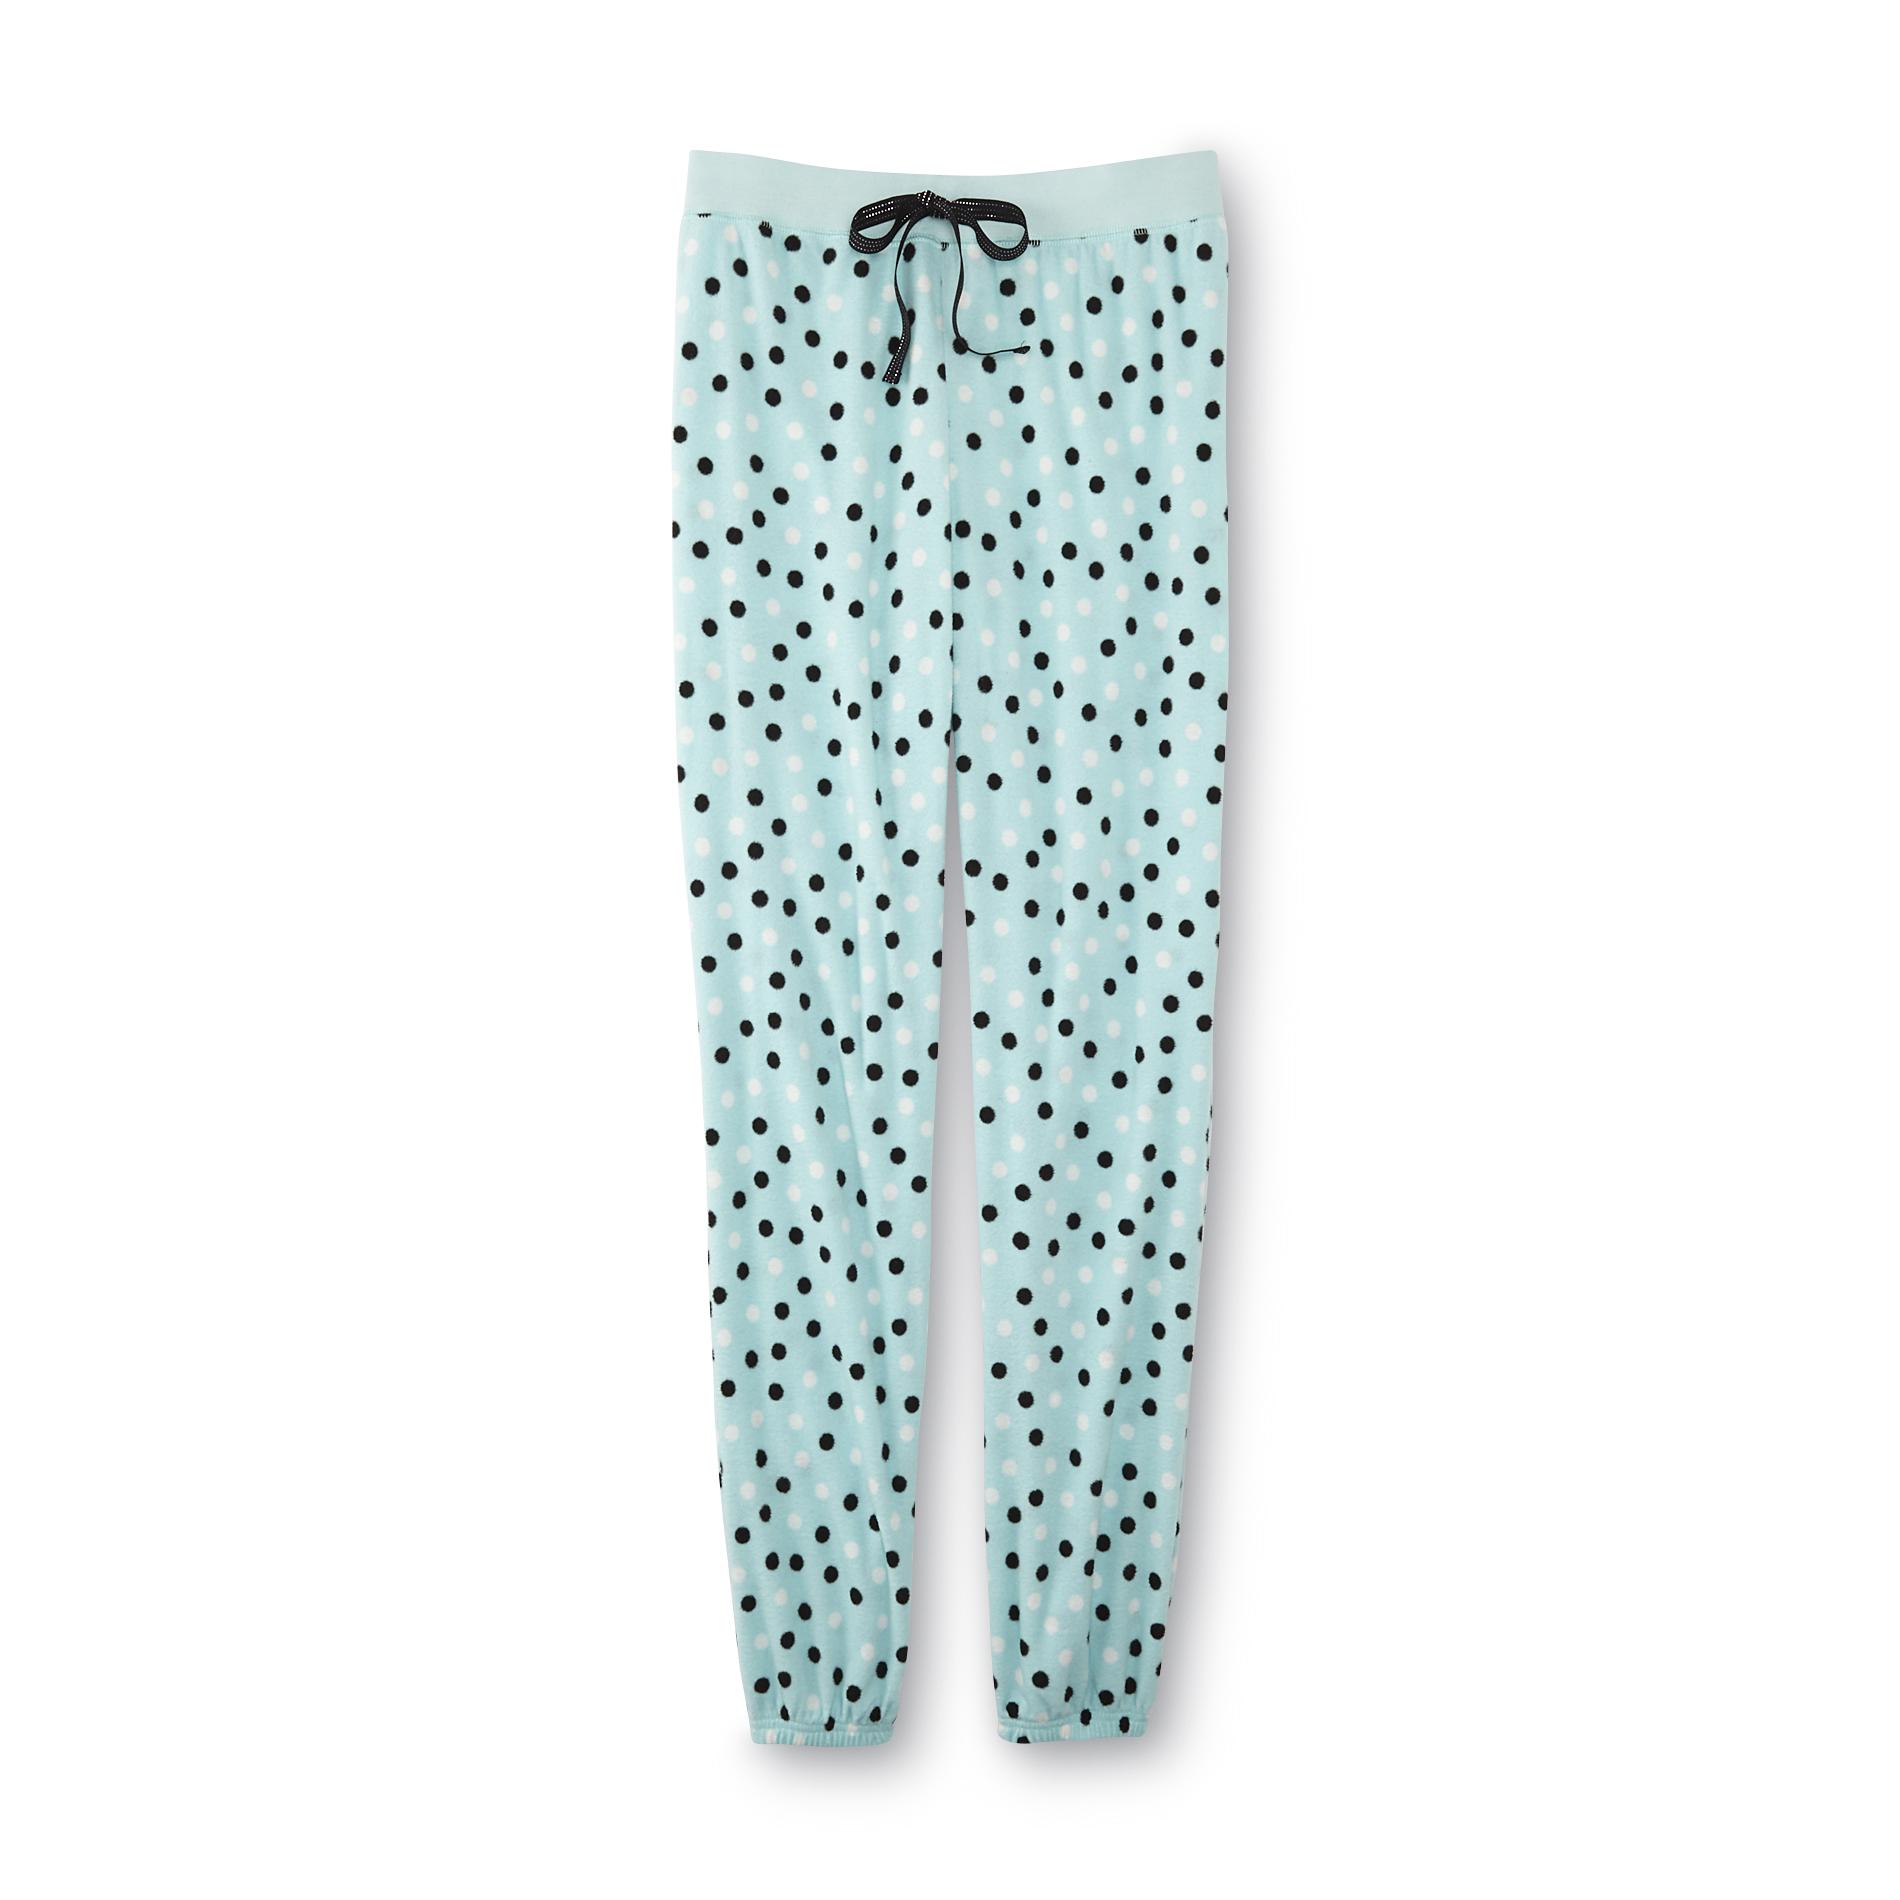 Joe Boxer Women's Pajama Pants - Polka Dot